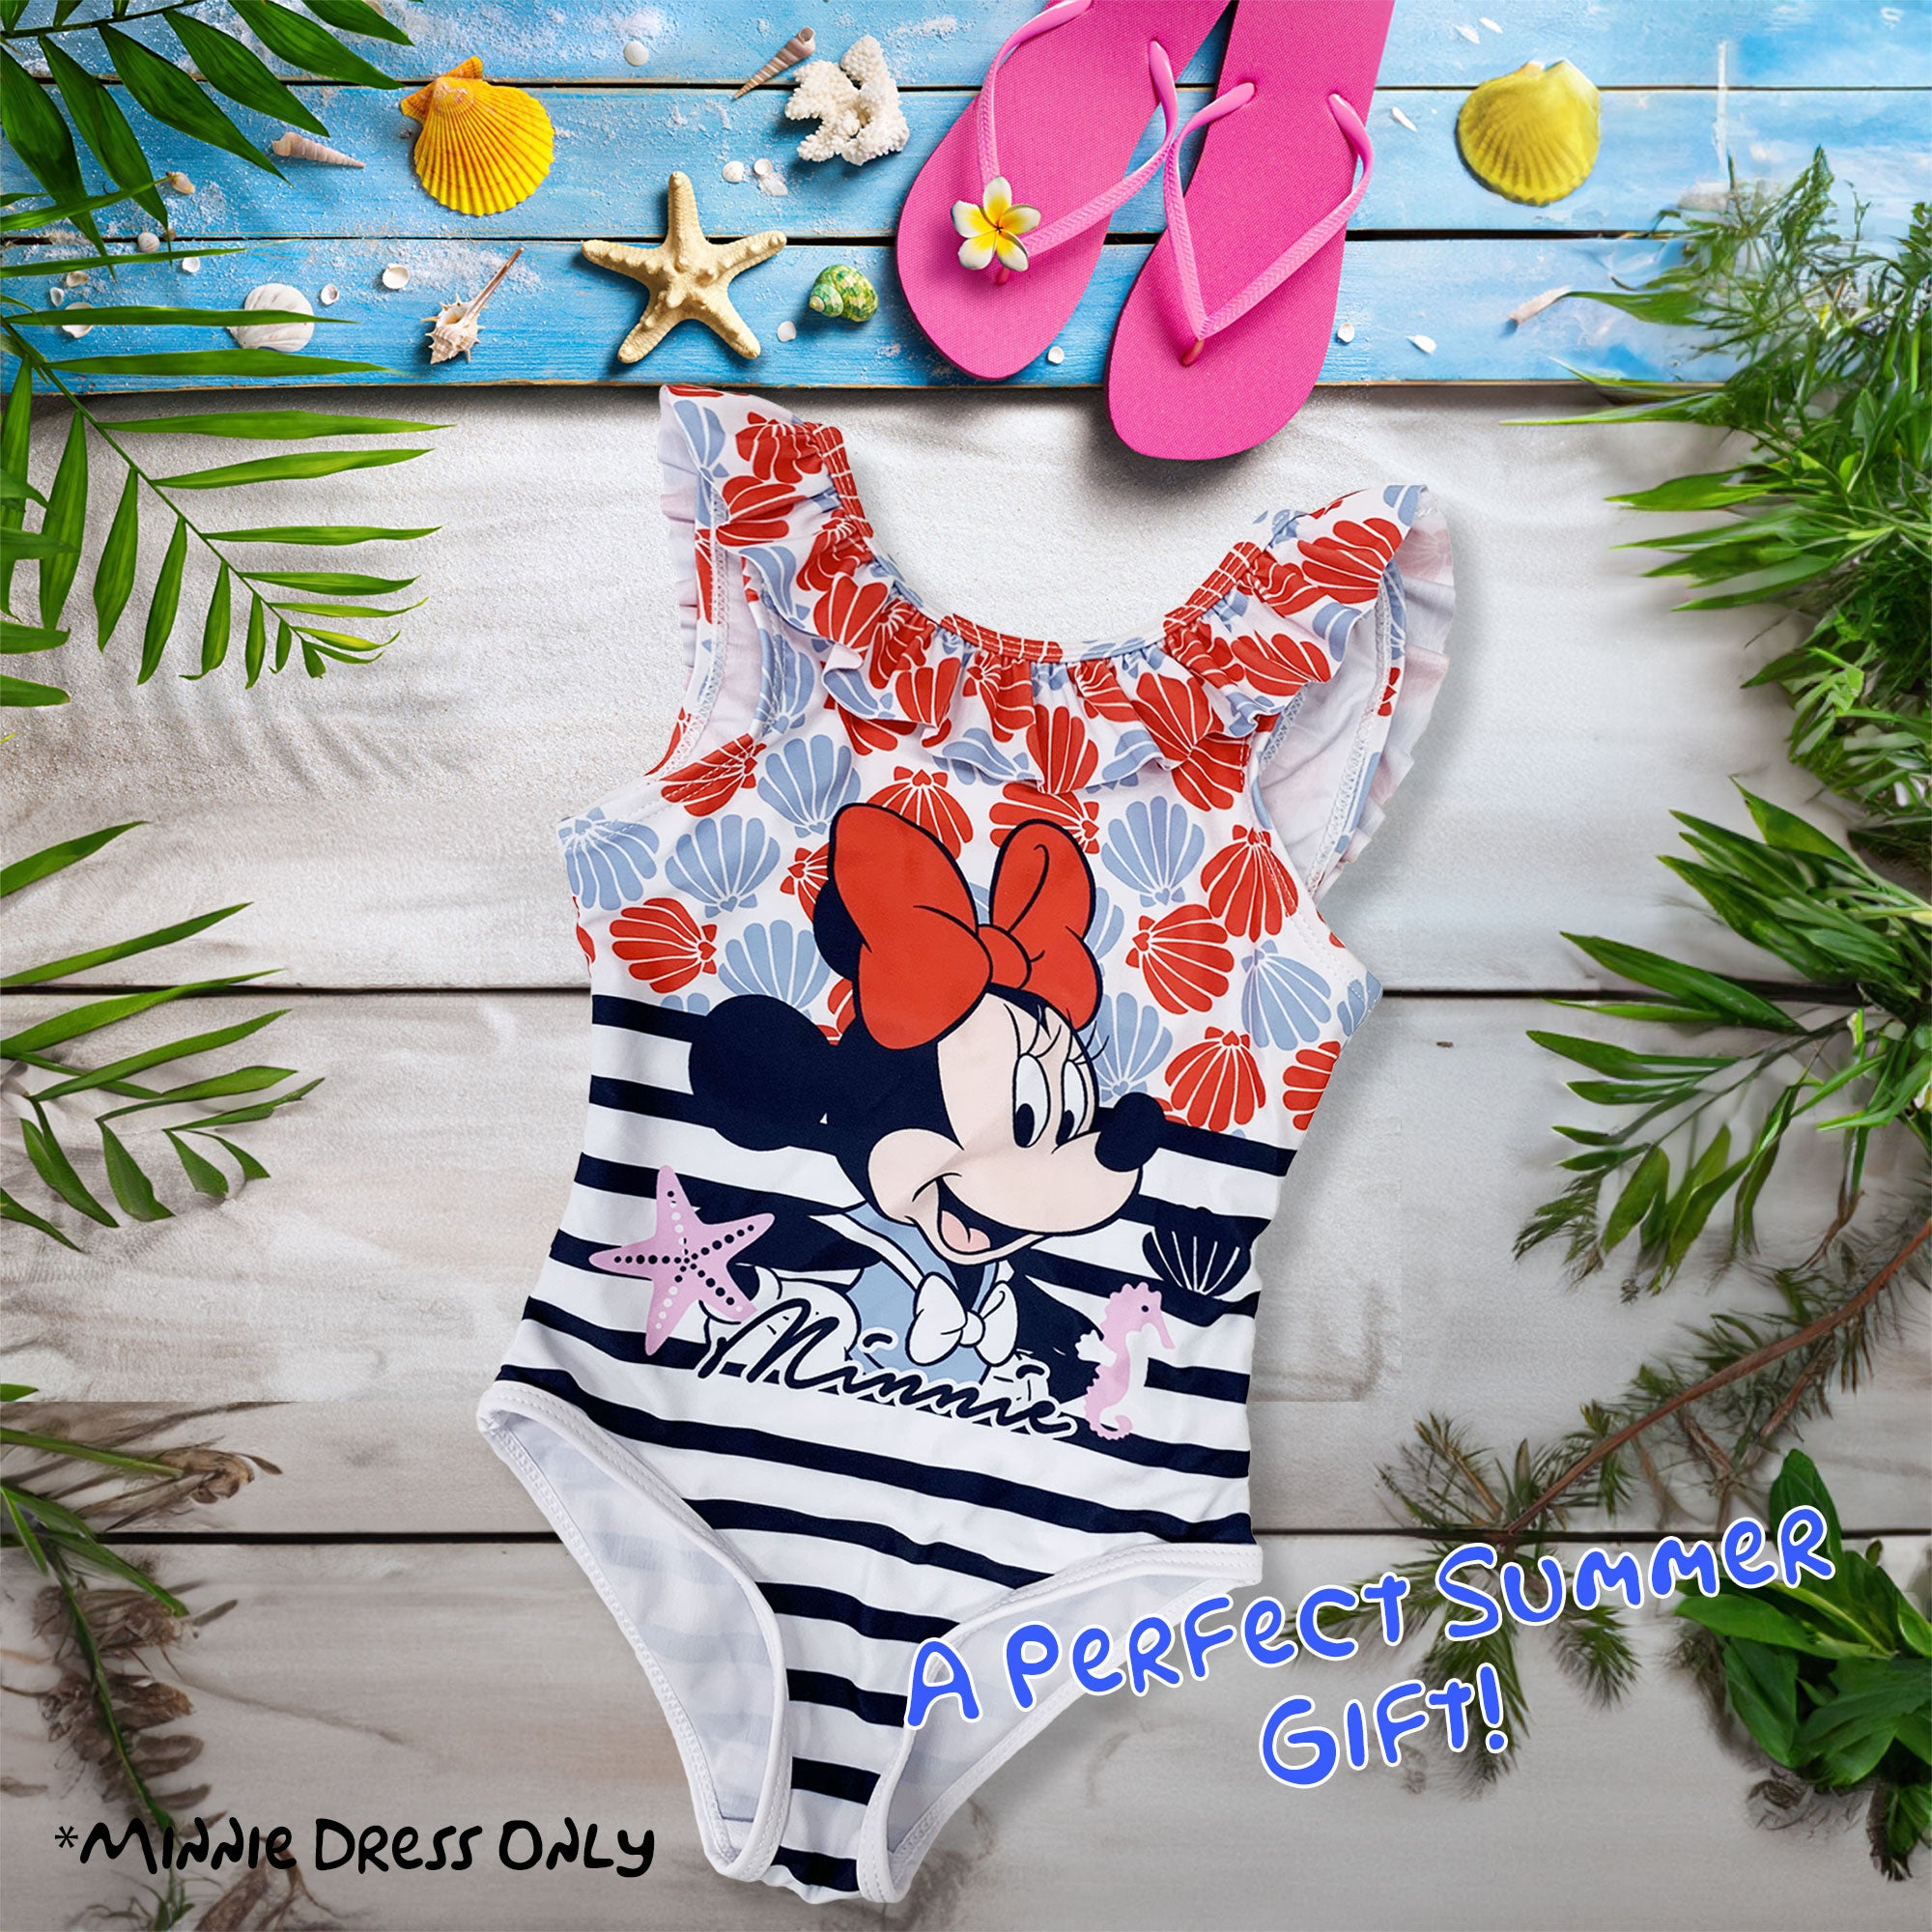 Costume da bagno bambina Disney Minnie Mouse un pezzo costume mare intero 6161